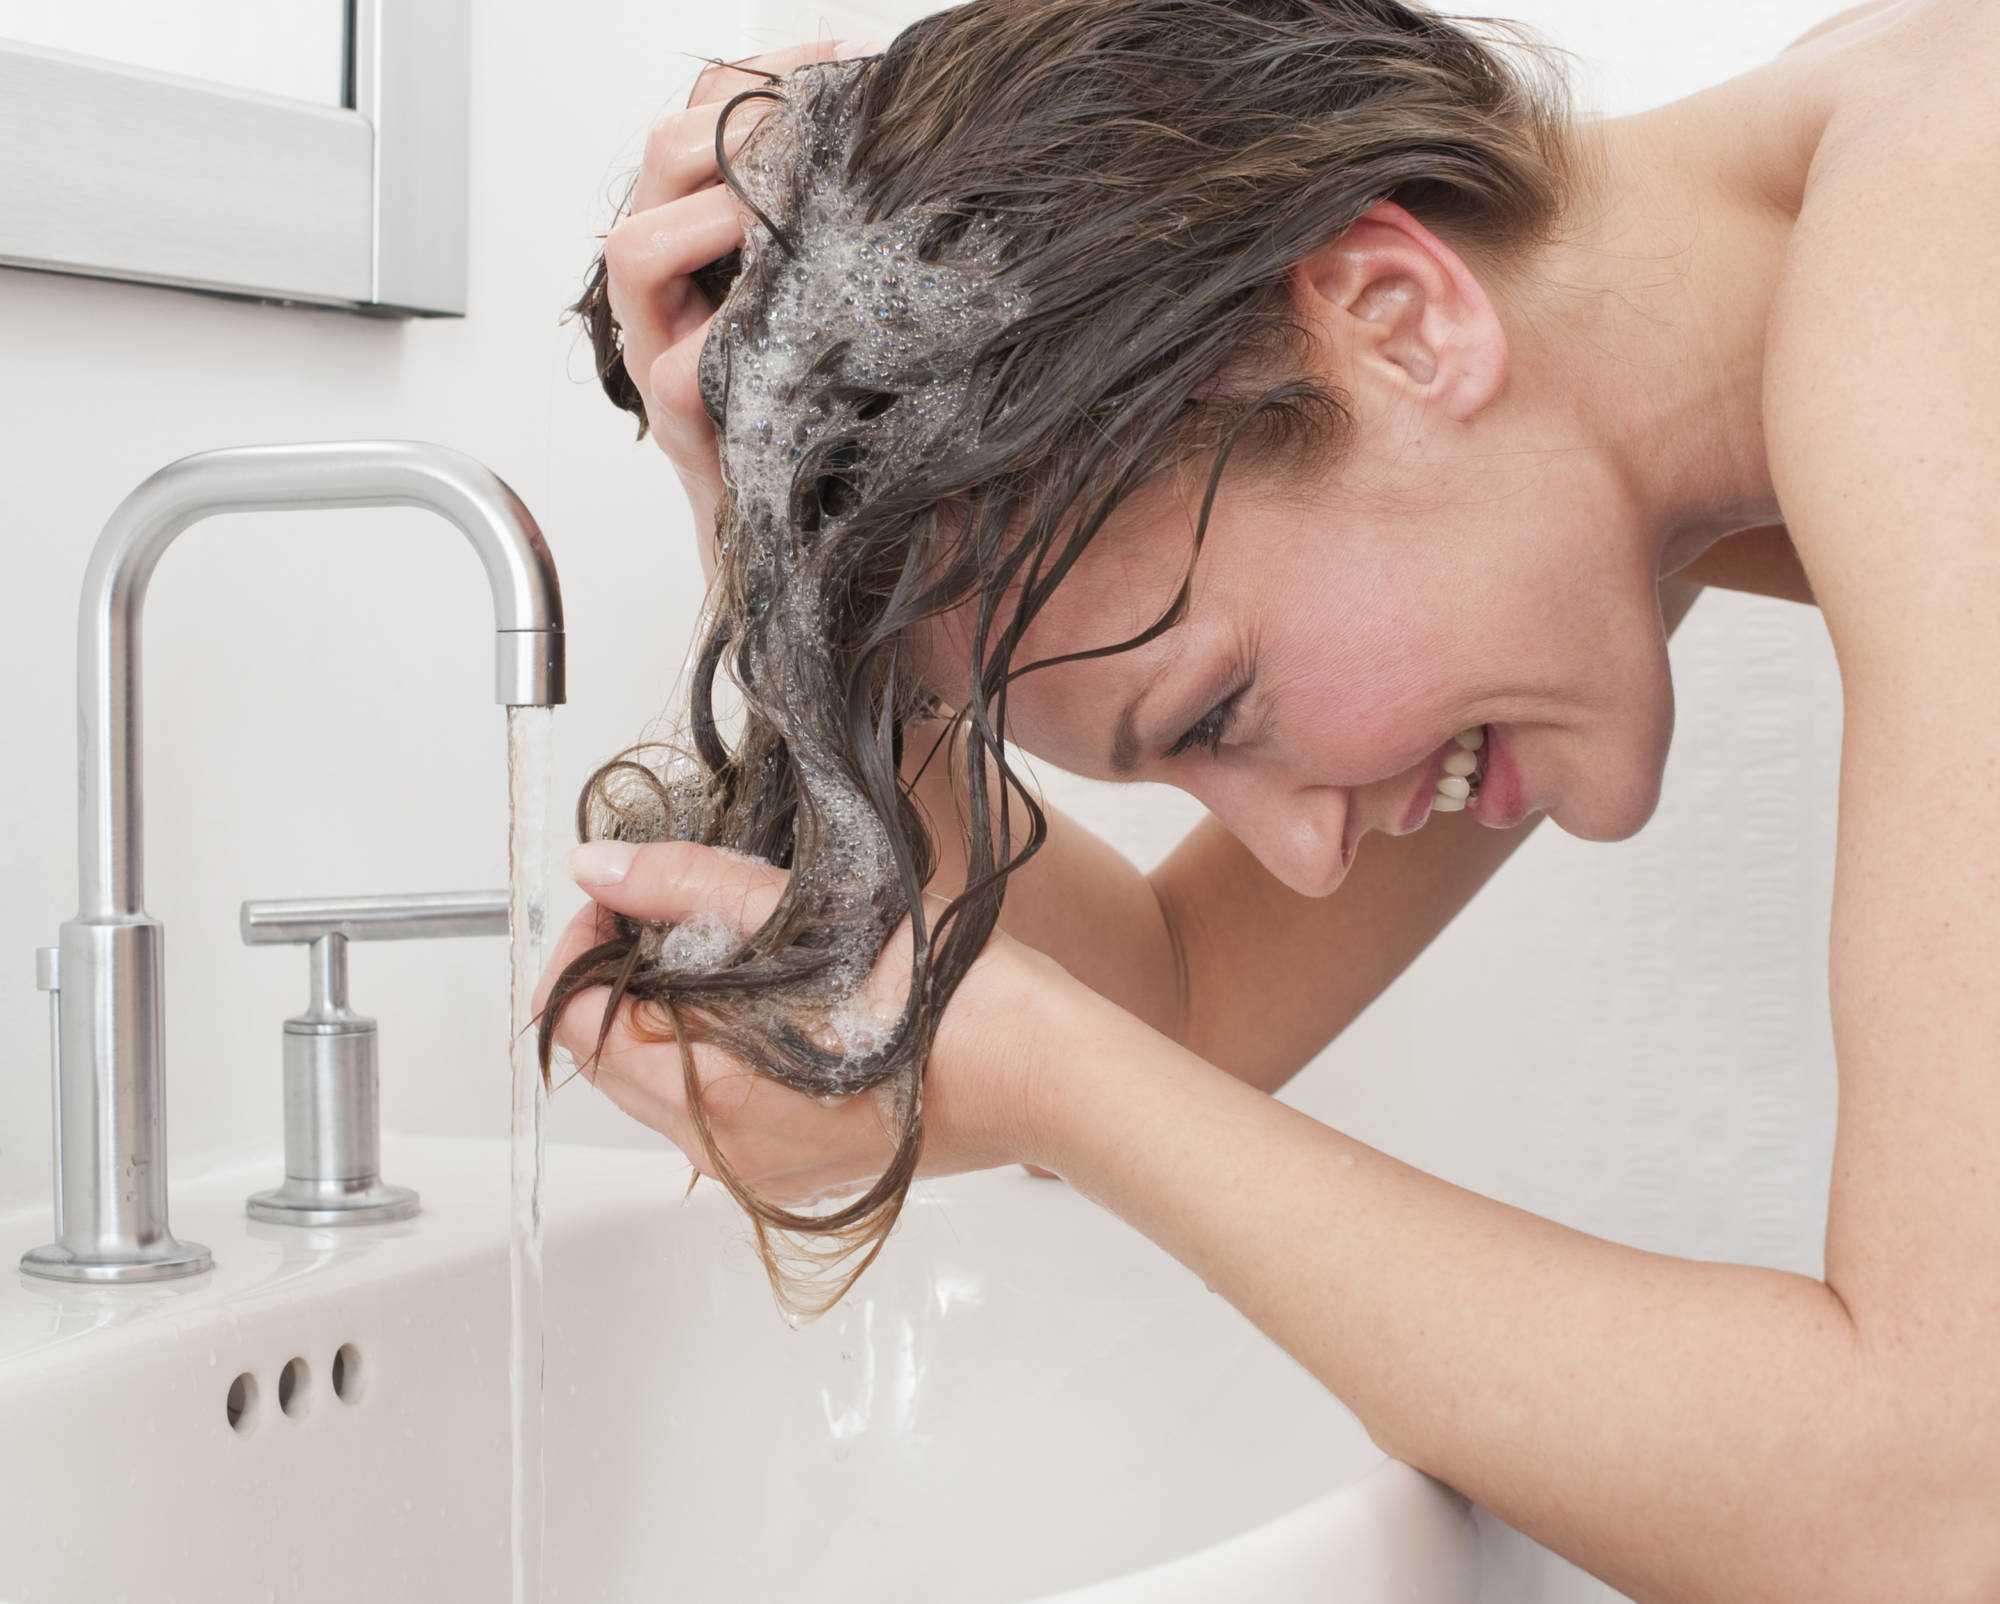 Редактор Наталия Капица - о том, как усилить действие бальзама для волос и сделать его использование максимально эффективным  Правило N1: прохладная вода  Бальзамы и кондиционеры нужно смывать прохладной водой Если она будет